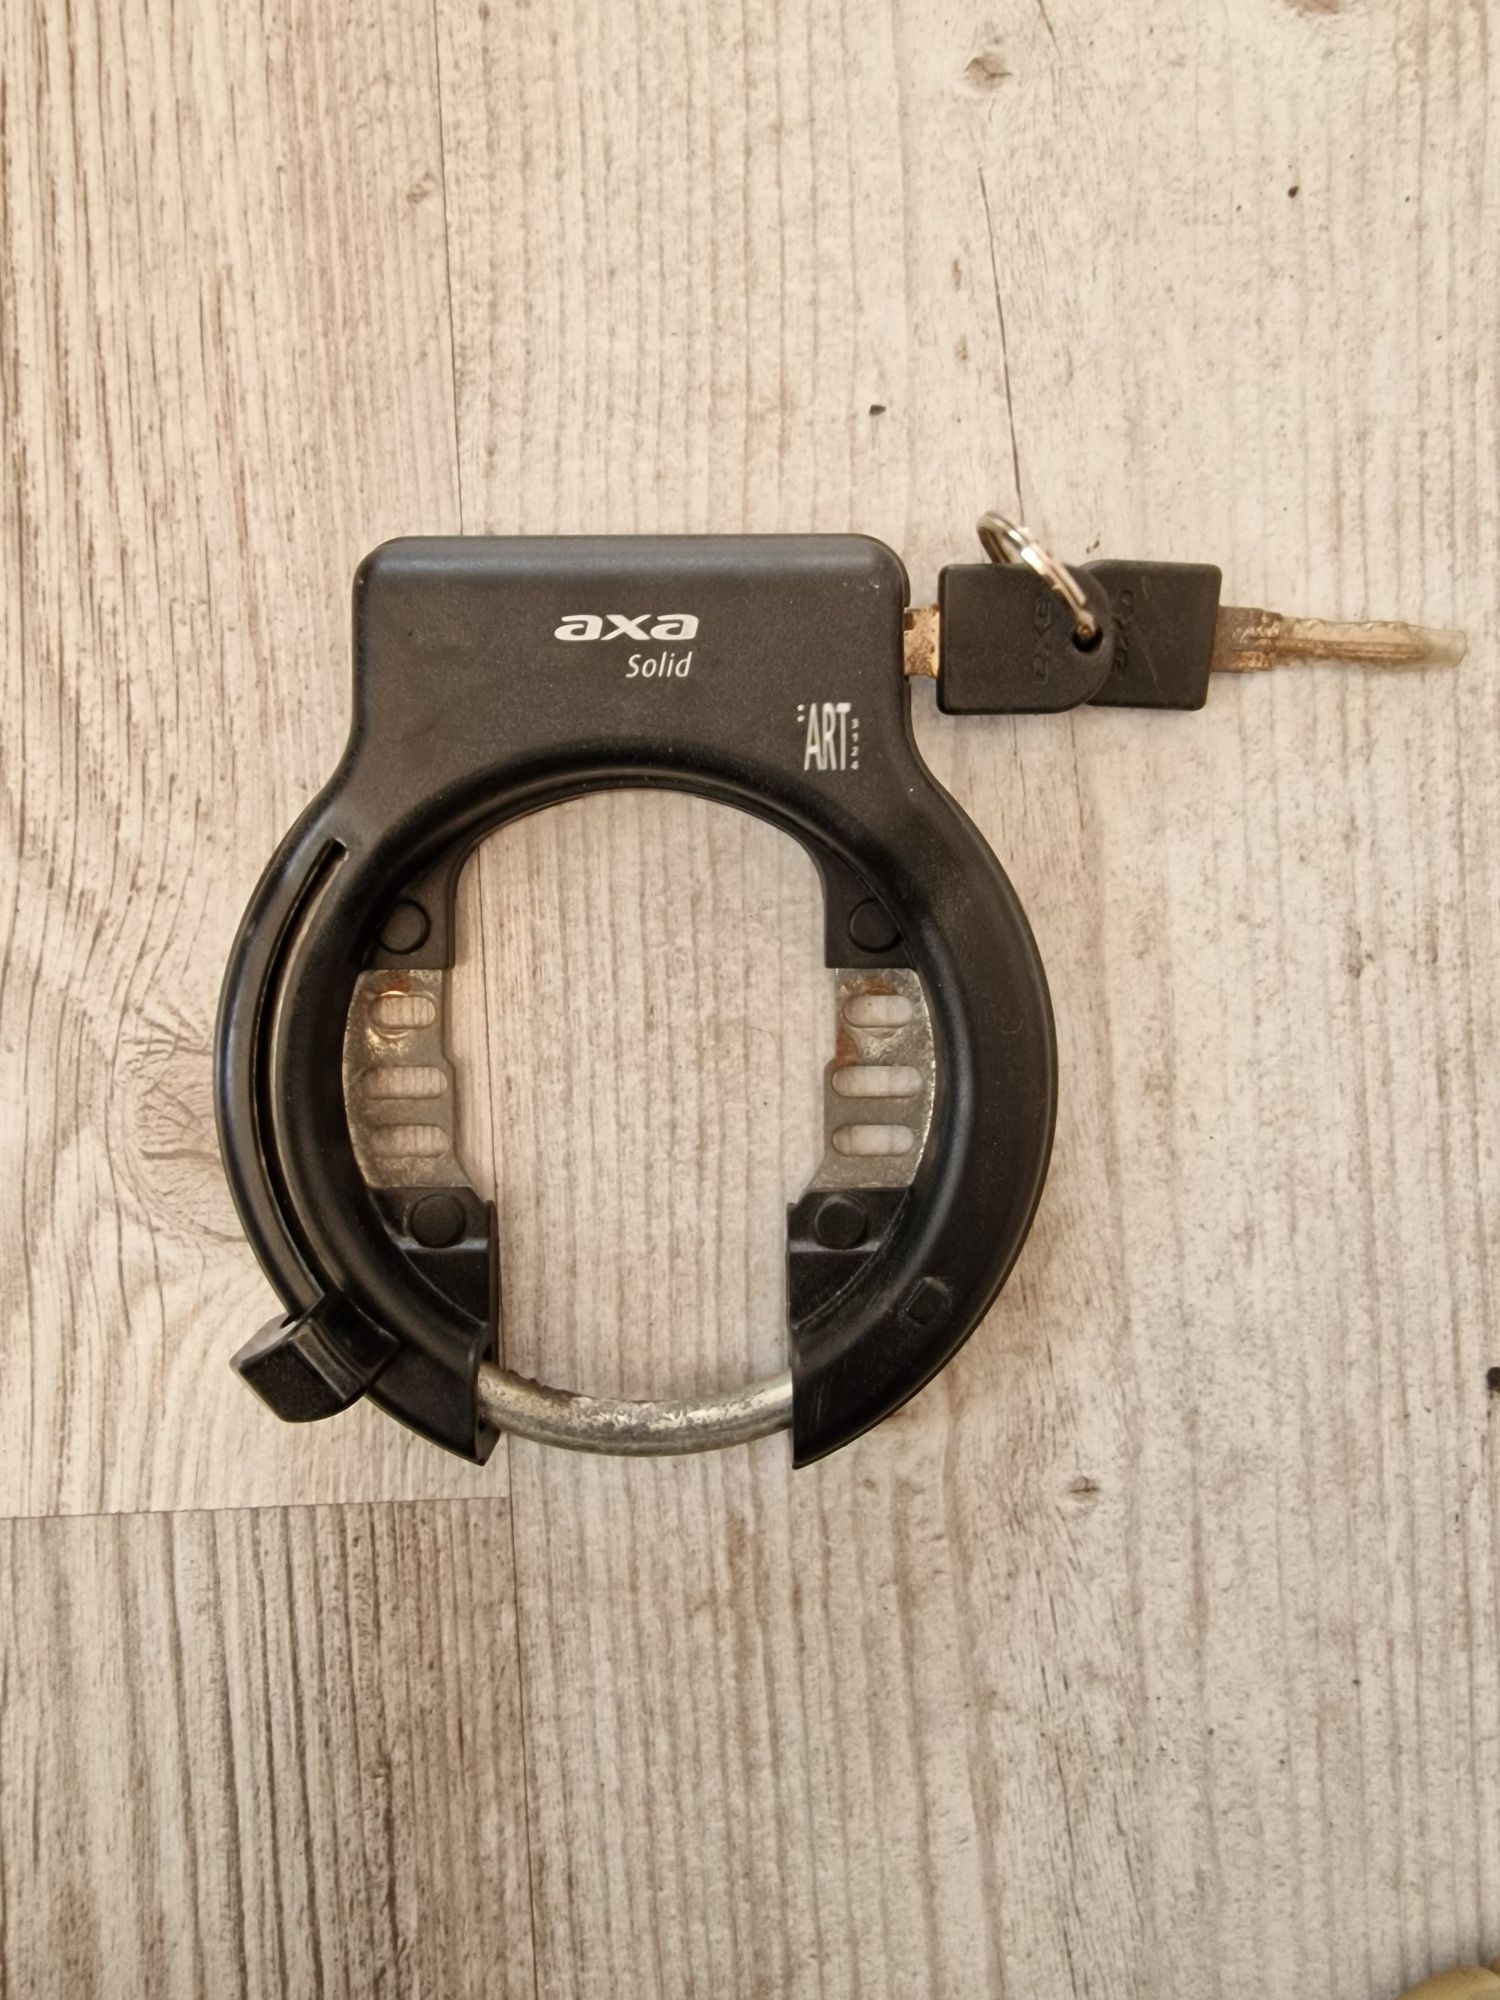 Zamknięcie rowerowe typu podkowa AXA Solid dwa kluczyki.